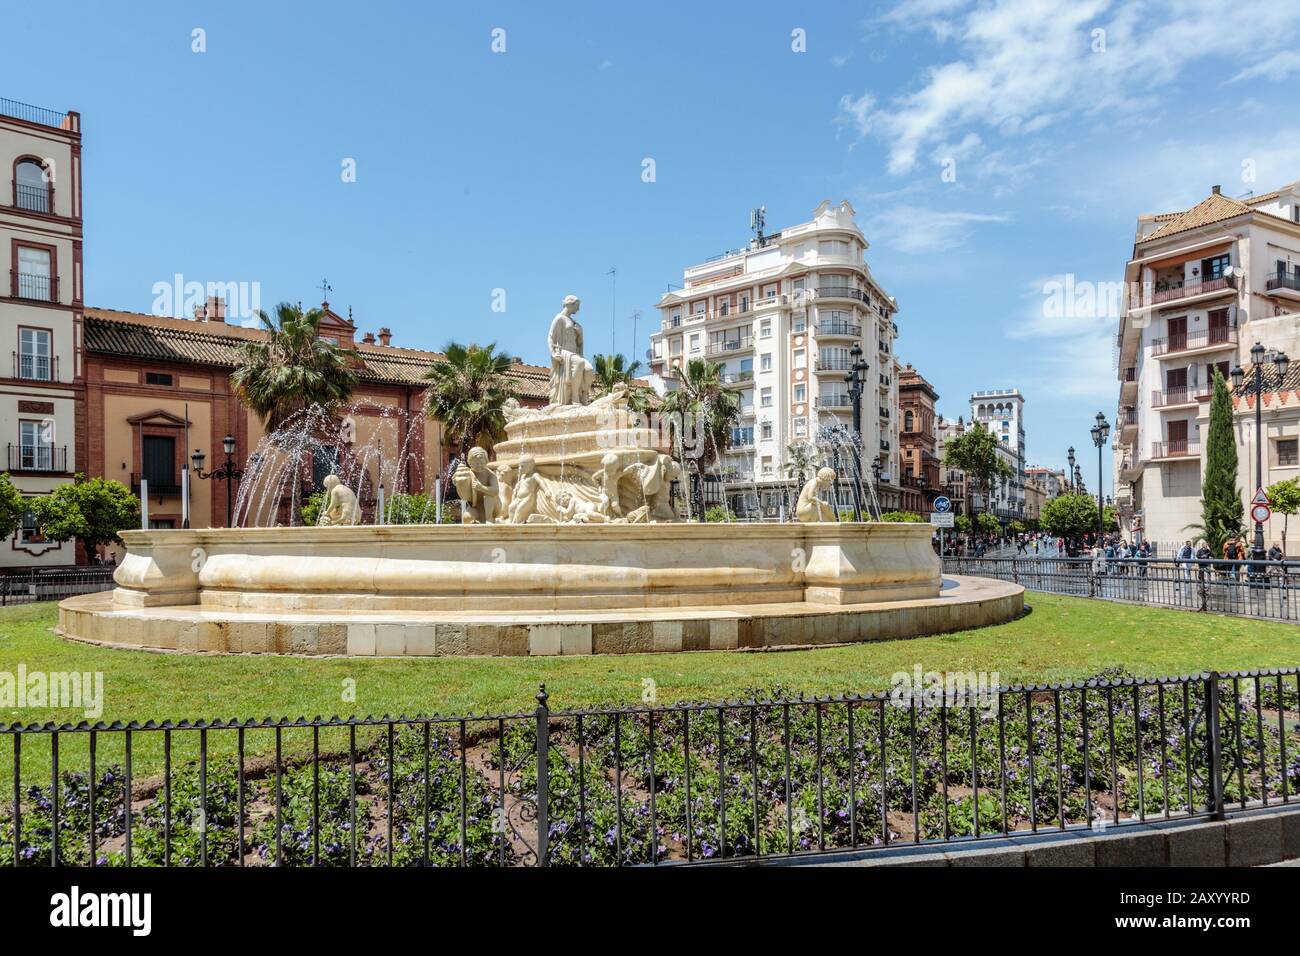 La fontaine d'eau d'Hispalis avec des nymphes de mer nénureuse à proximité de Puerta de Jerez (porte de Jerez) à Séville, Espagne Banque D'Images